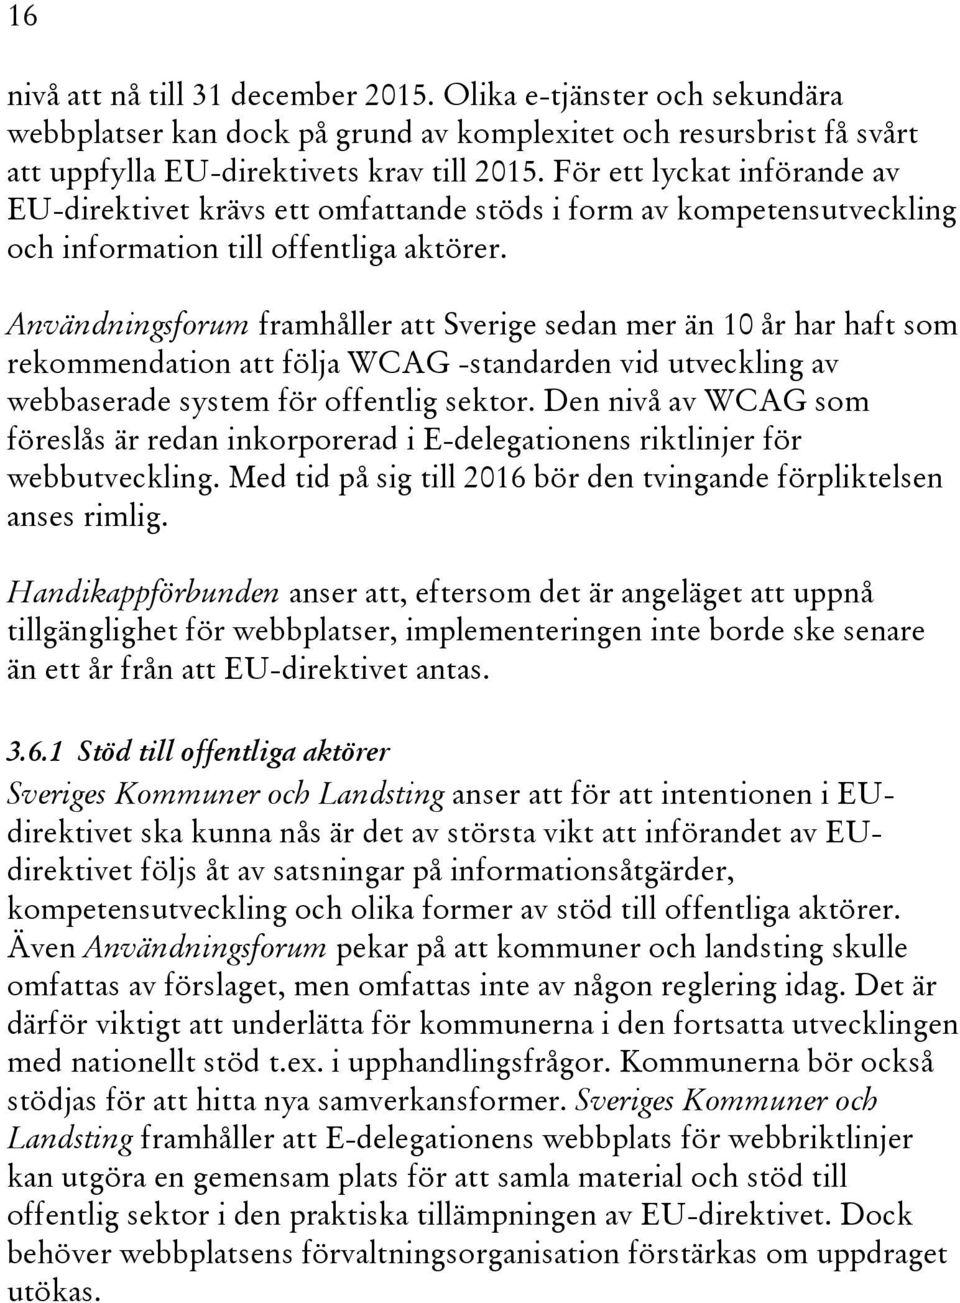 Användningsforum framhåller att Sverige sedan mer än 10 år har haft som rekommendation att följa WCAG -standarden vid utveckling av webbaserade system för offentlig sektor.